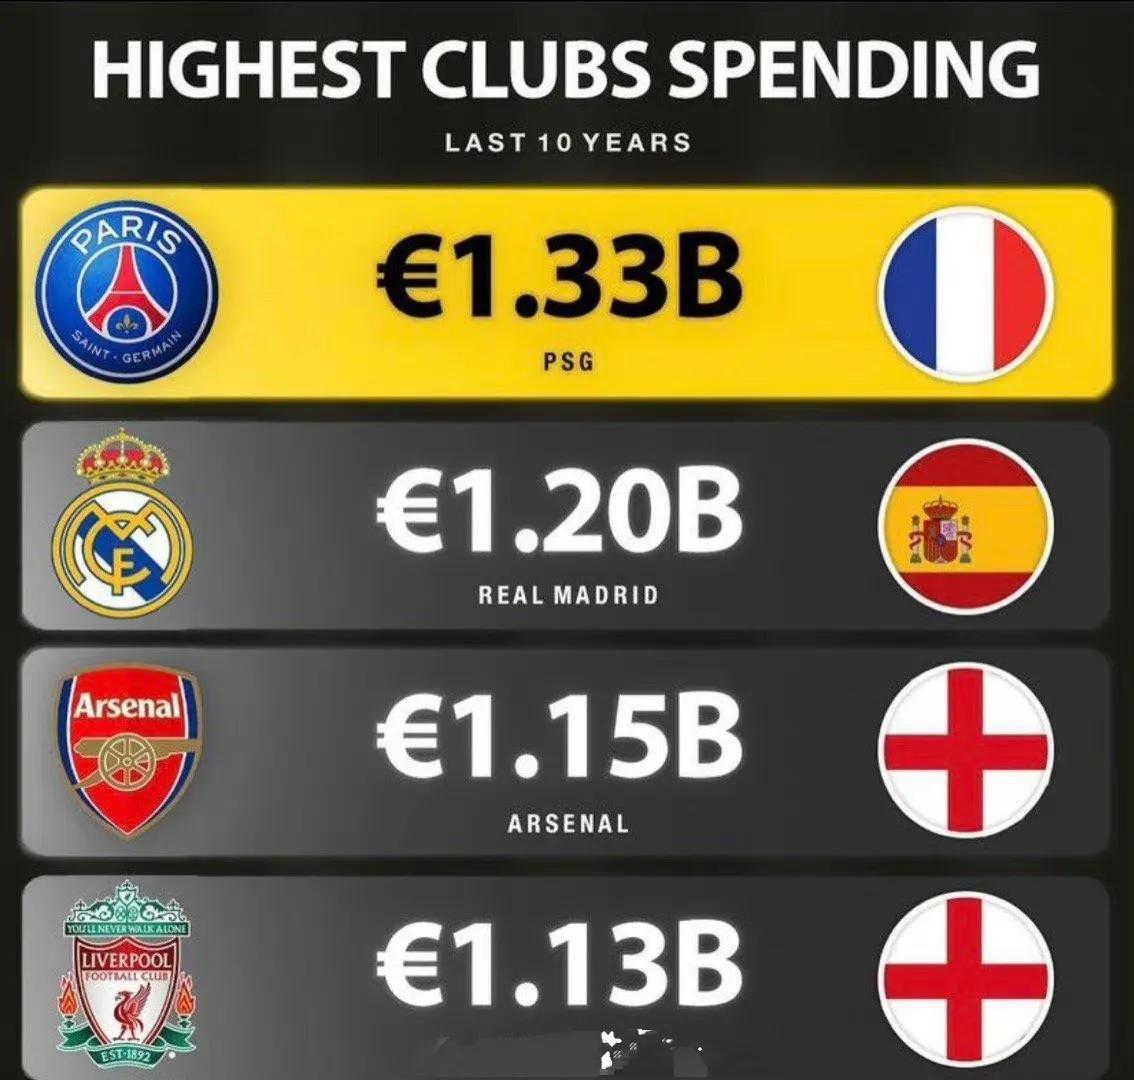 过去十年欧洲花费最多的球队，和他们的成绩。

大巴黎花了13.3亿欧元，只有法甲(1)